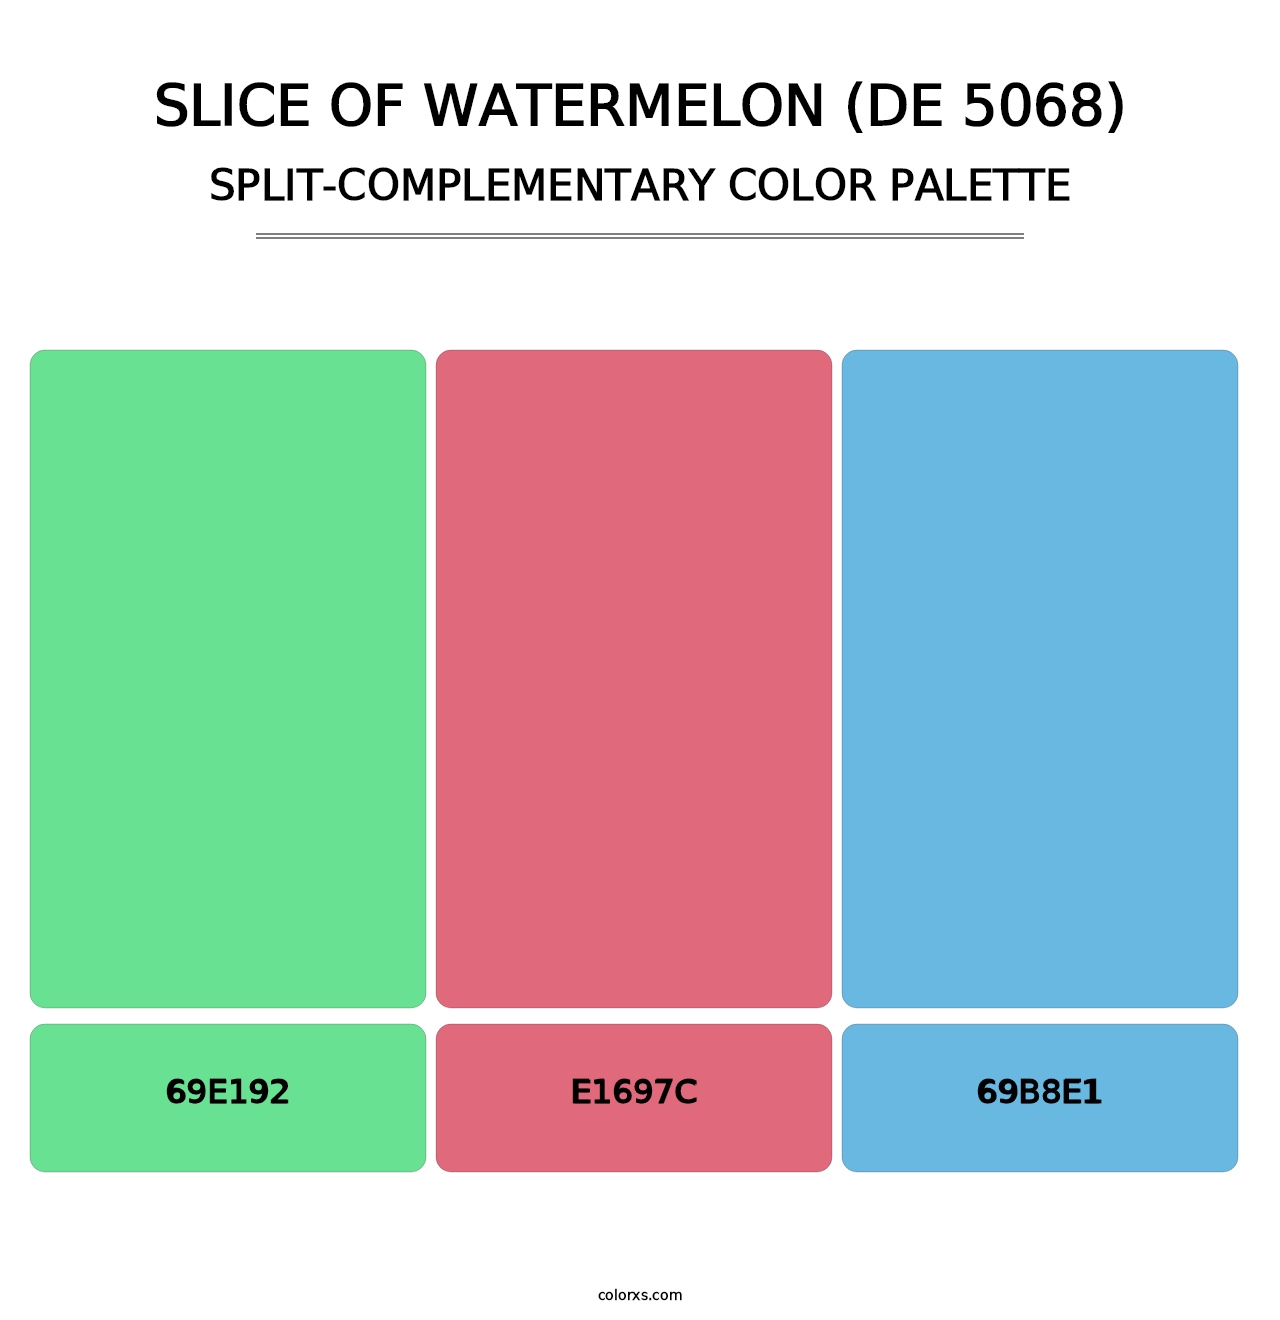 Slice of Watermelon (DE 5068) - Split-Complementary Color Palette